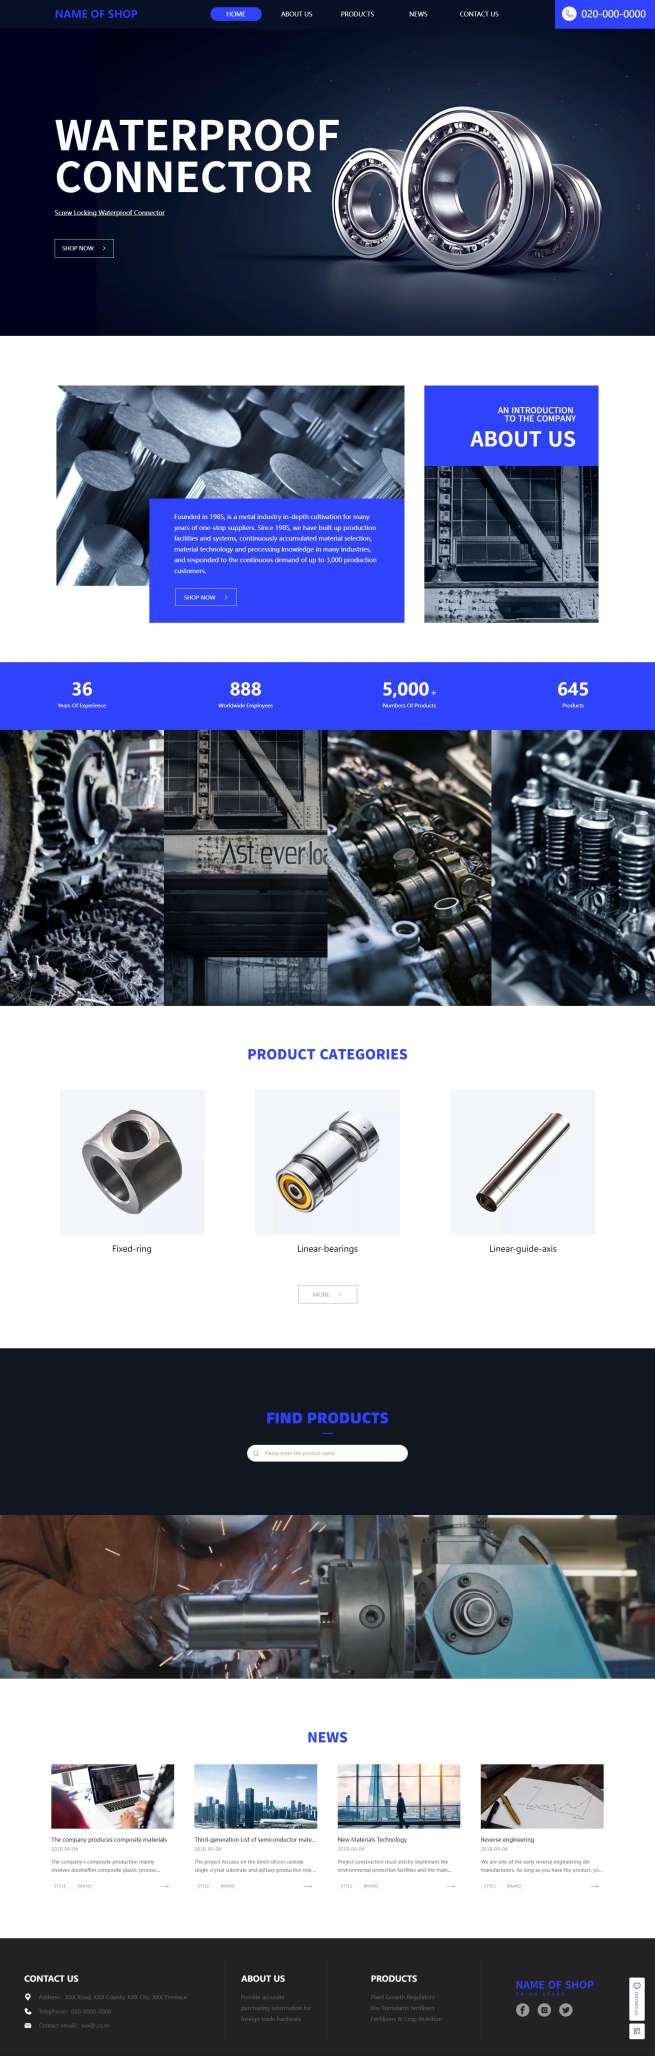 专业外贸配件材料企业网站模板